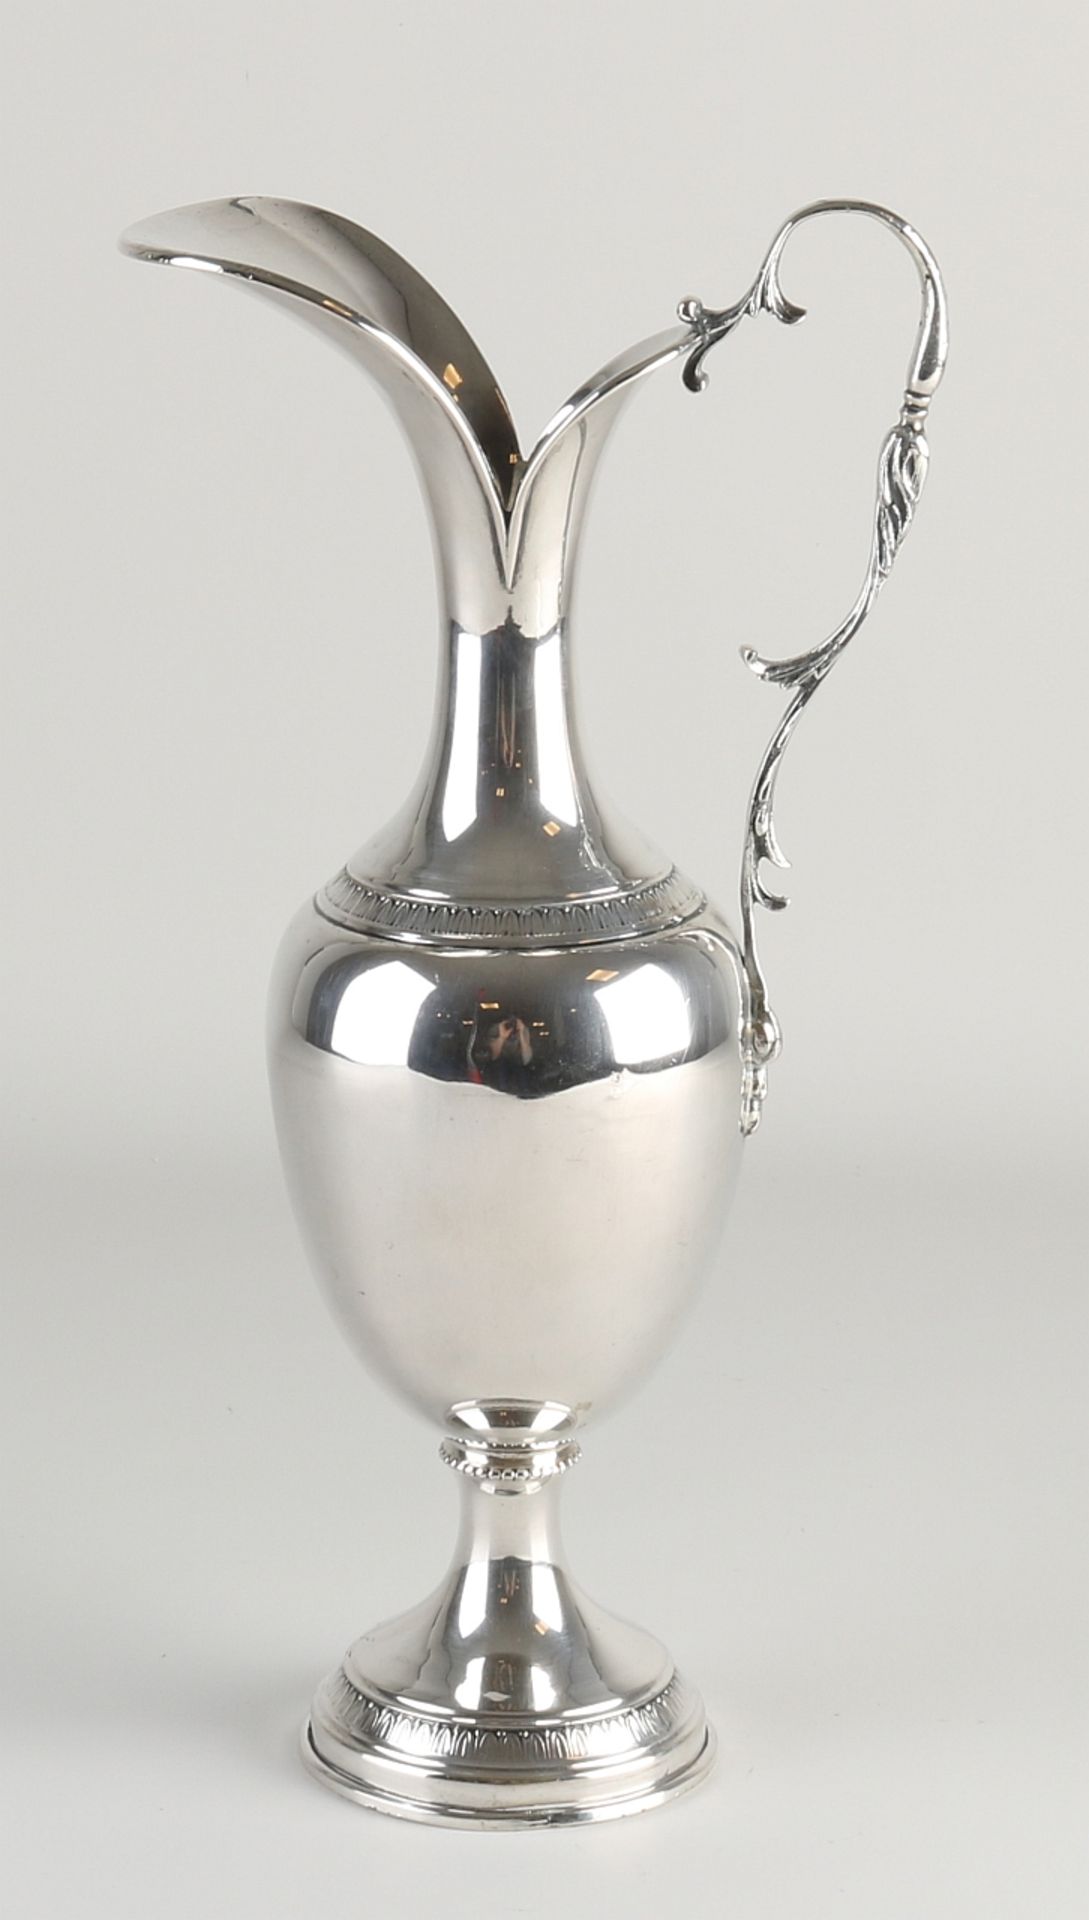 silver jug